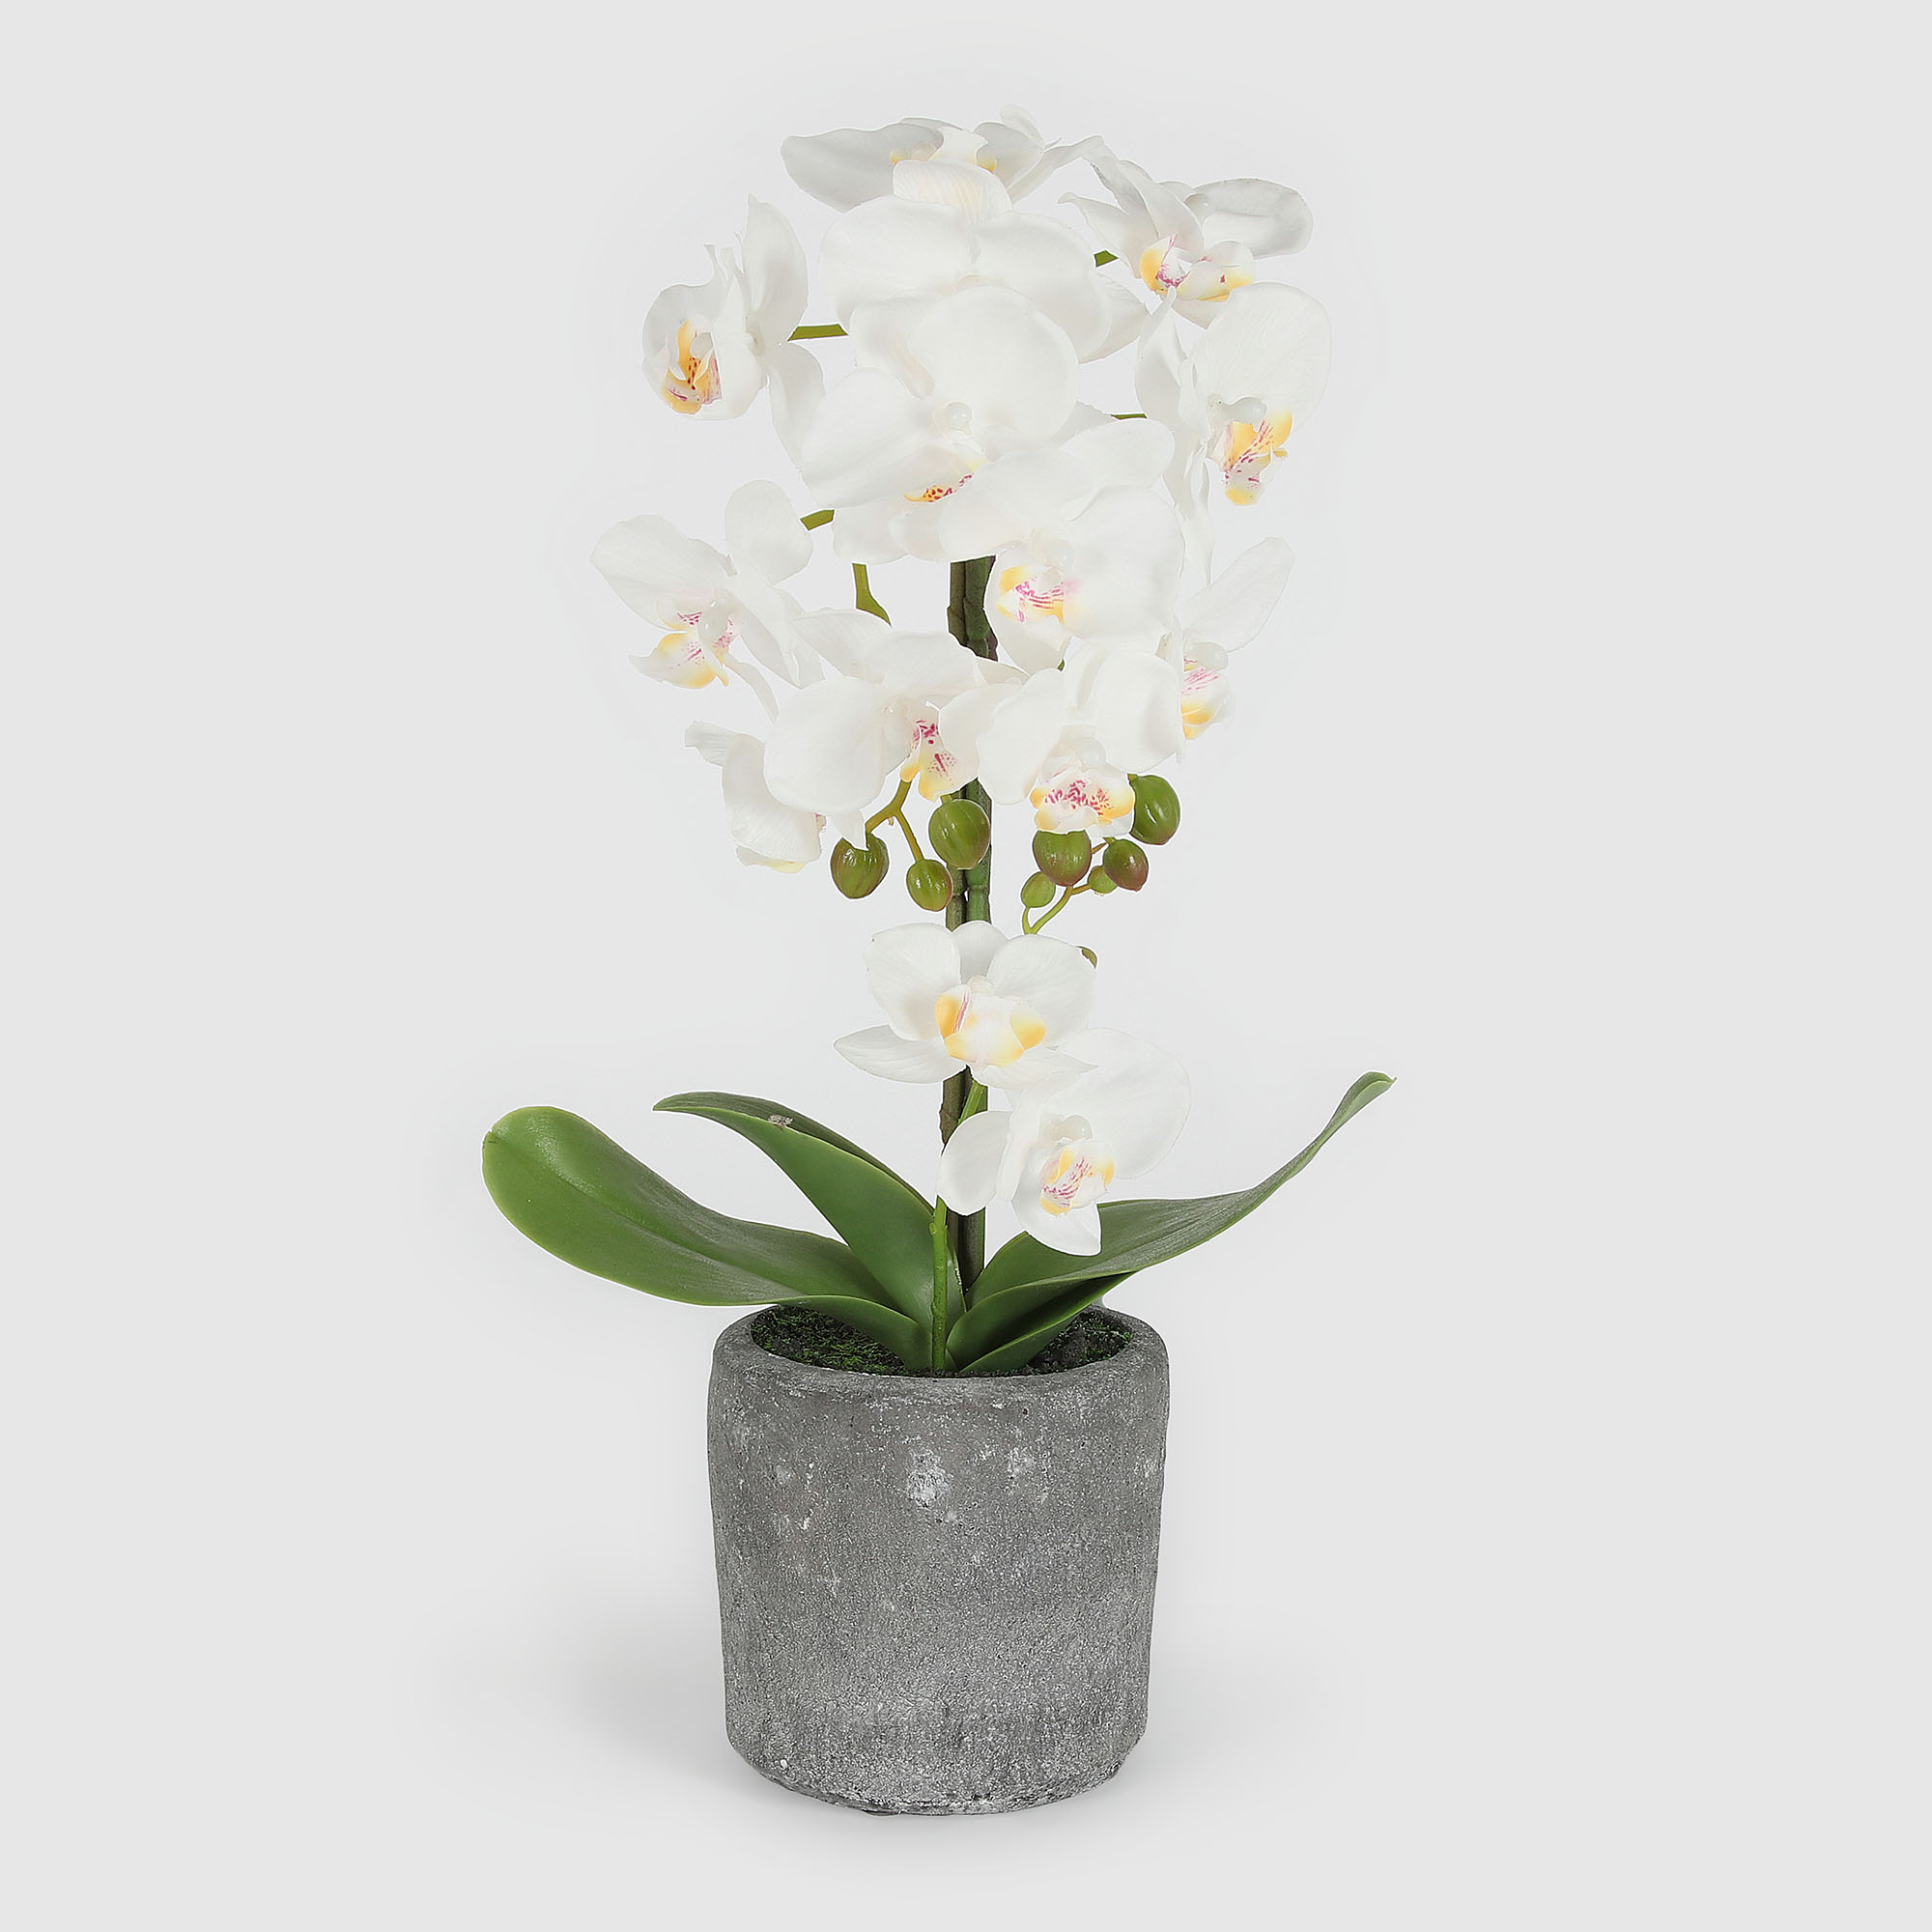 Цветок искусственный Fuzhou Light в горшке орхидея белая 3 цвета, 42 см - фото 1